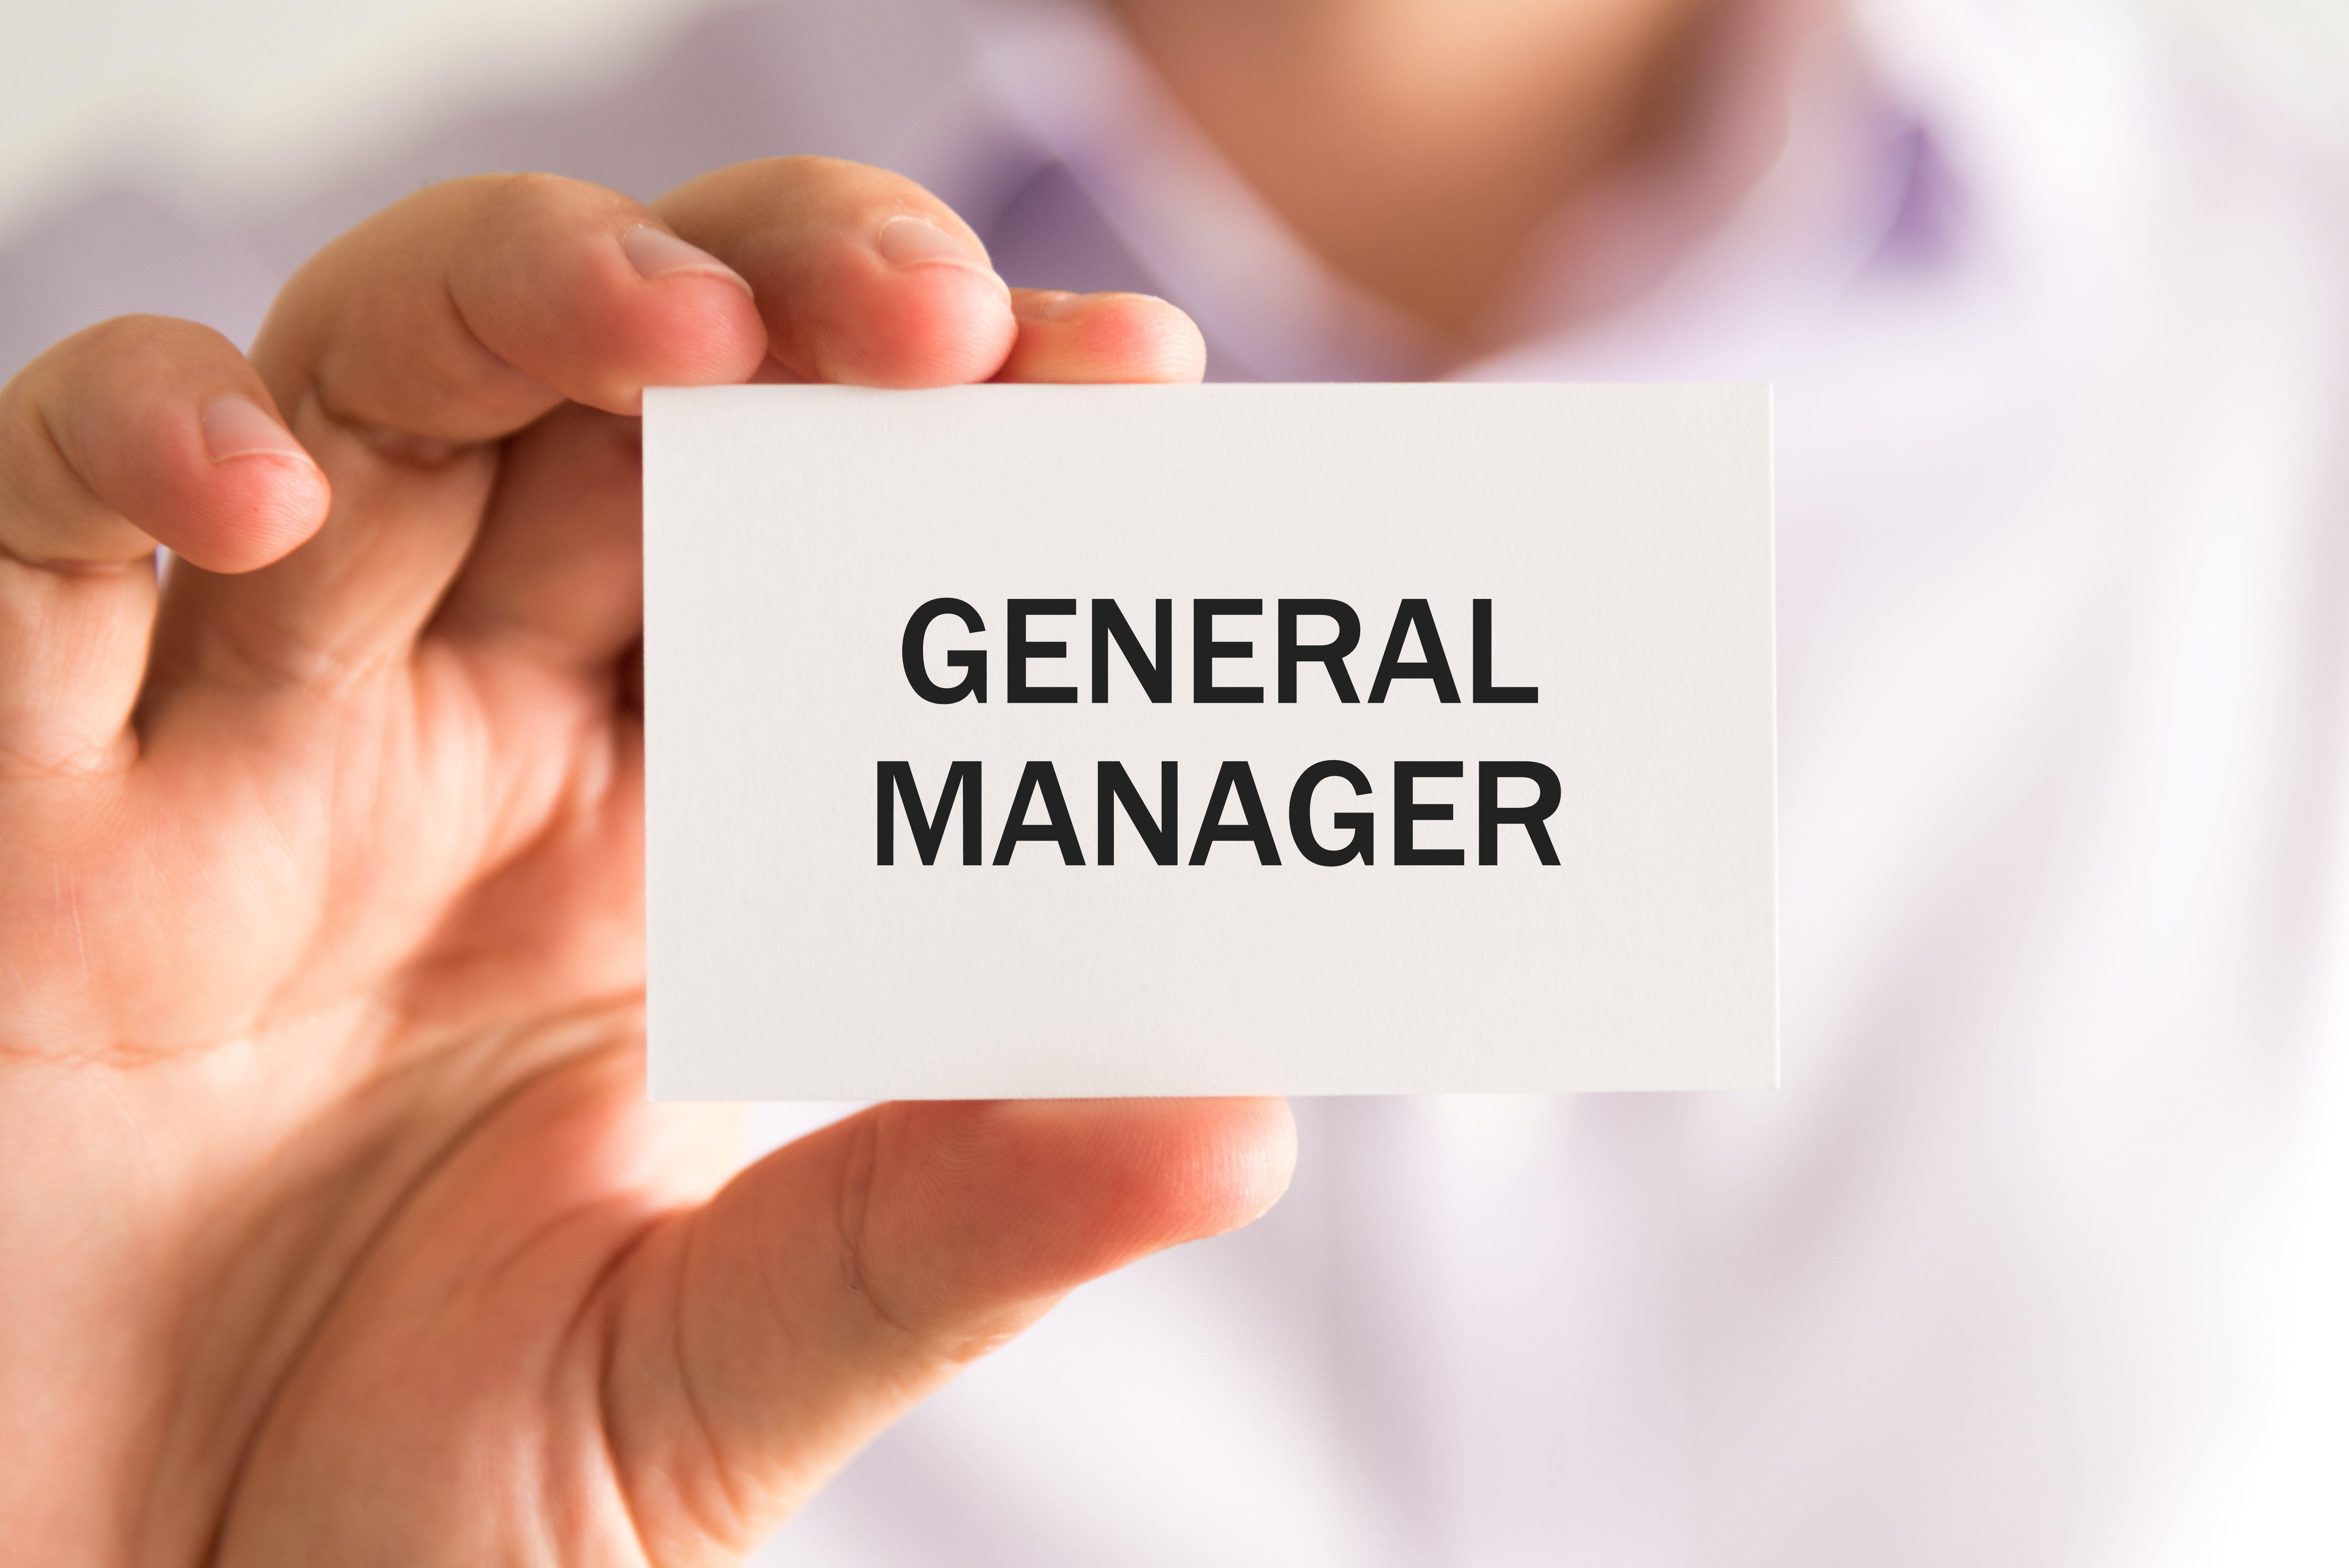 General Manager là chức vụ gì?